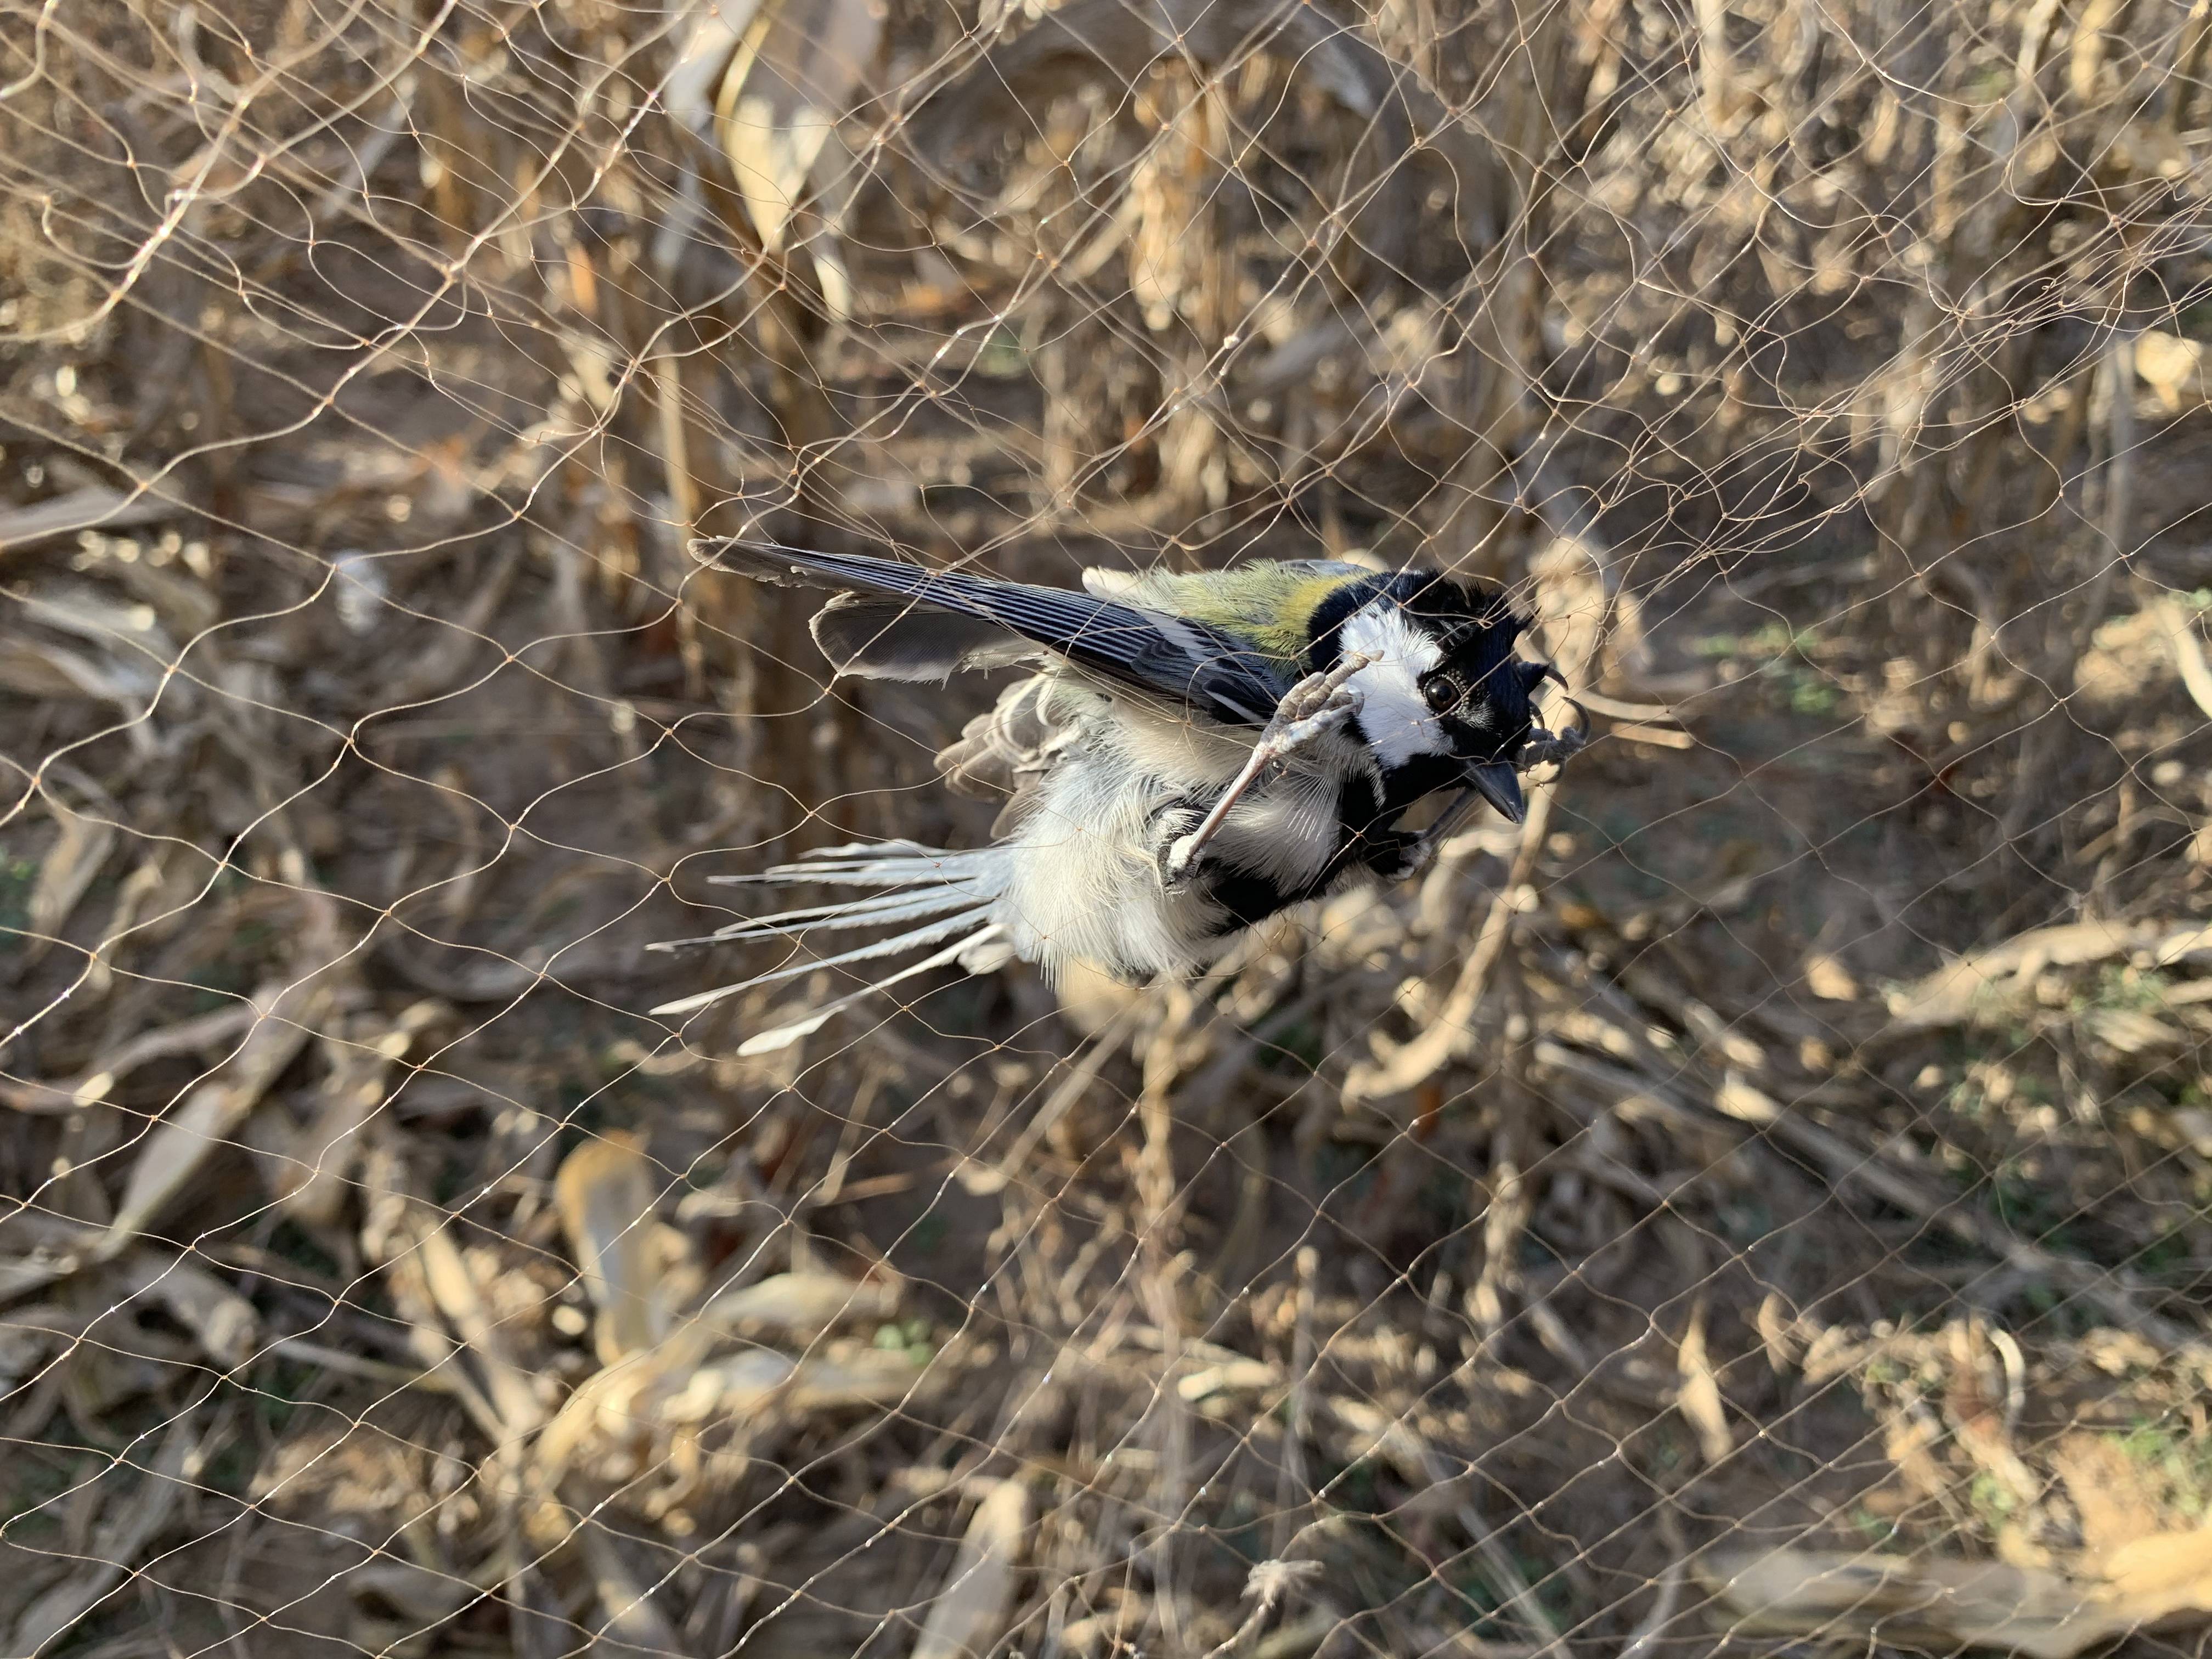 在河北省承德市承德县营房村旁的玉米地里,一只鸟被捕鸟网困住,奄奄一